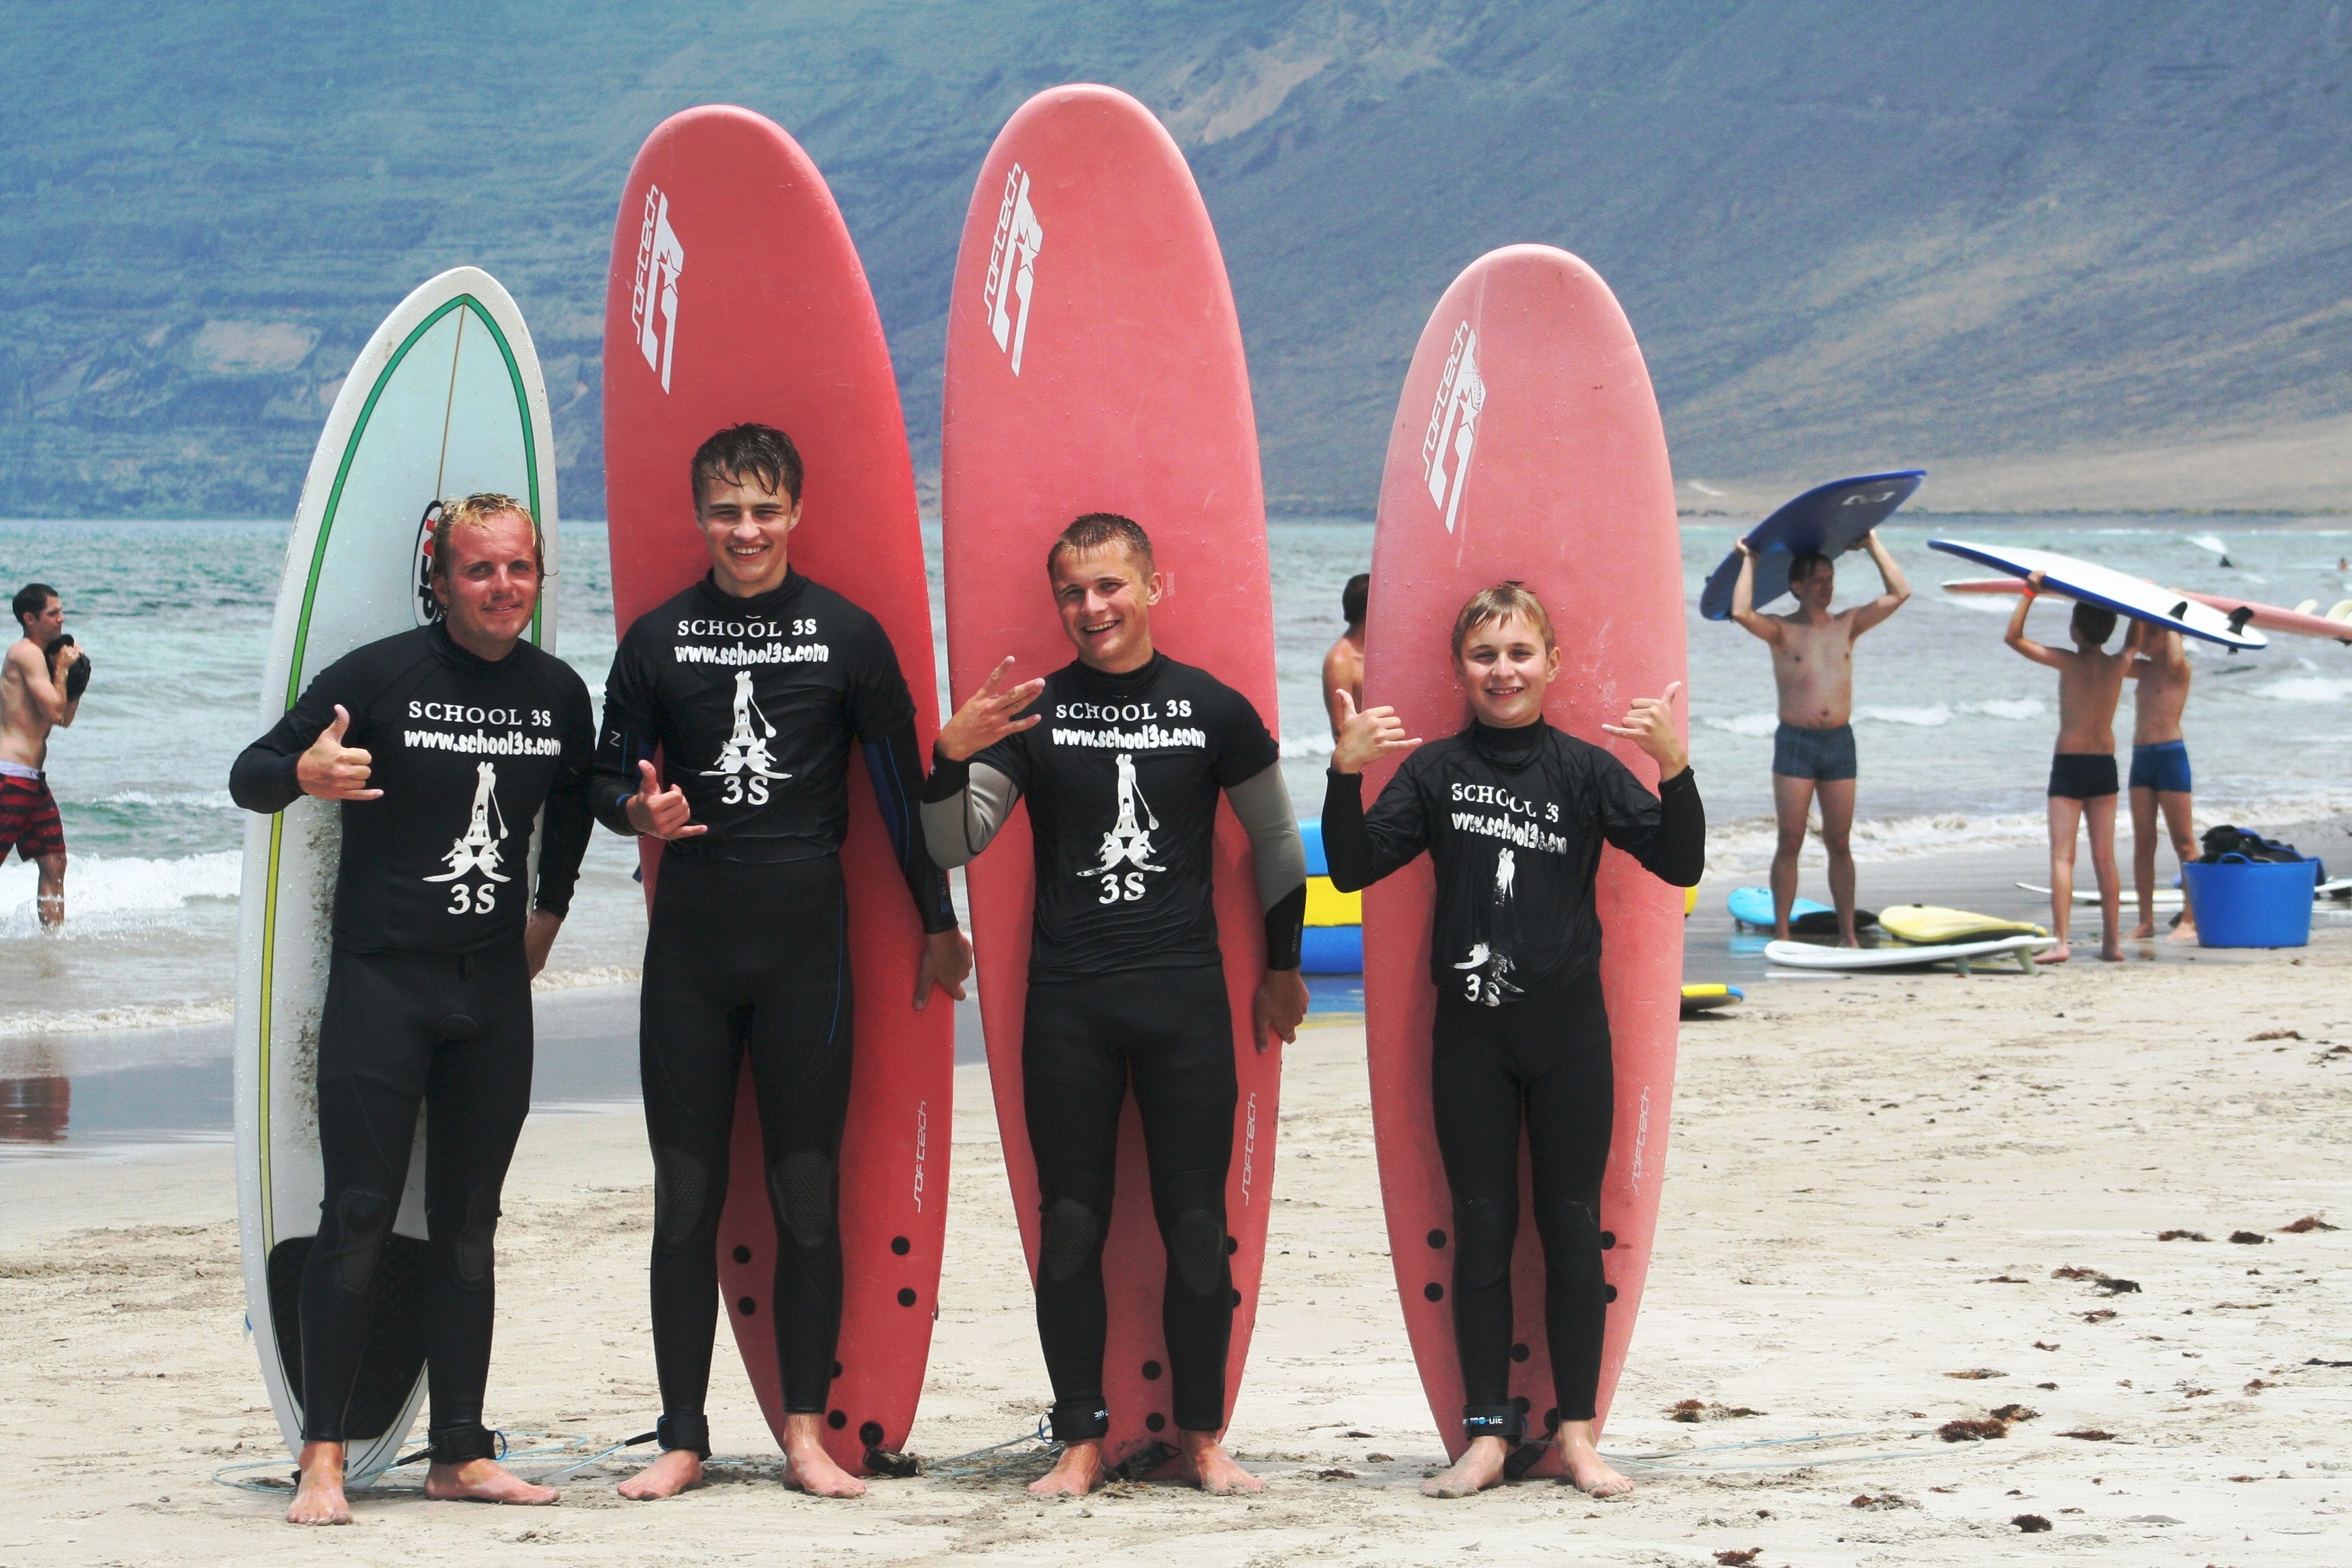 Descubre School3s surf sup & soul